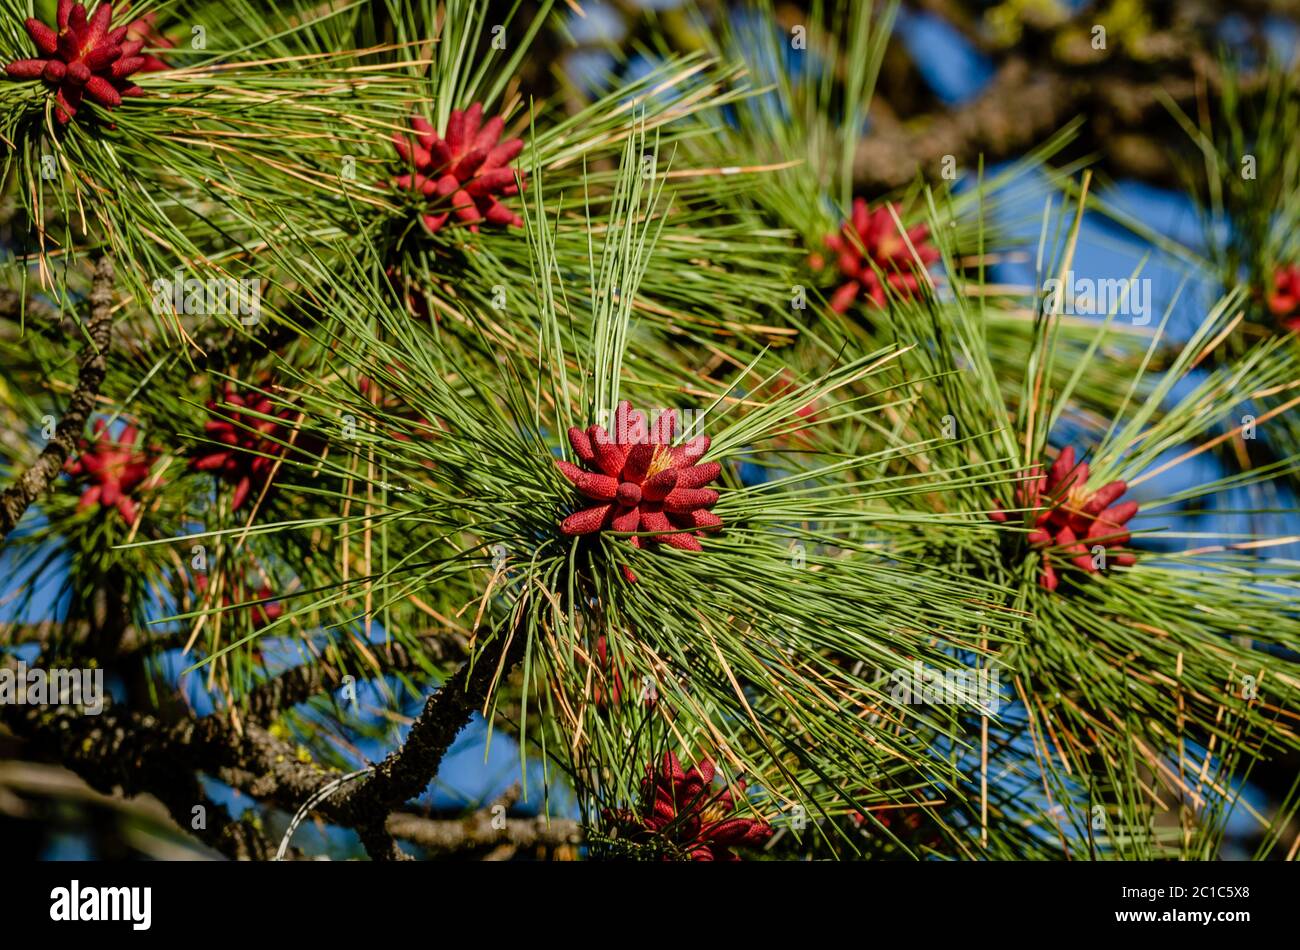 Ponderosa Pine Tree With New Male Pinecones Stock Photo